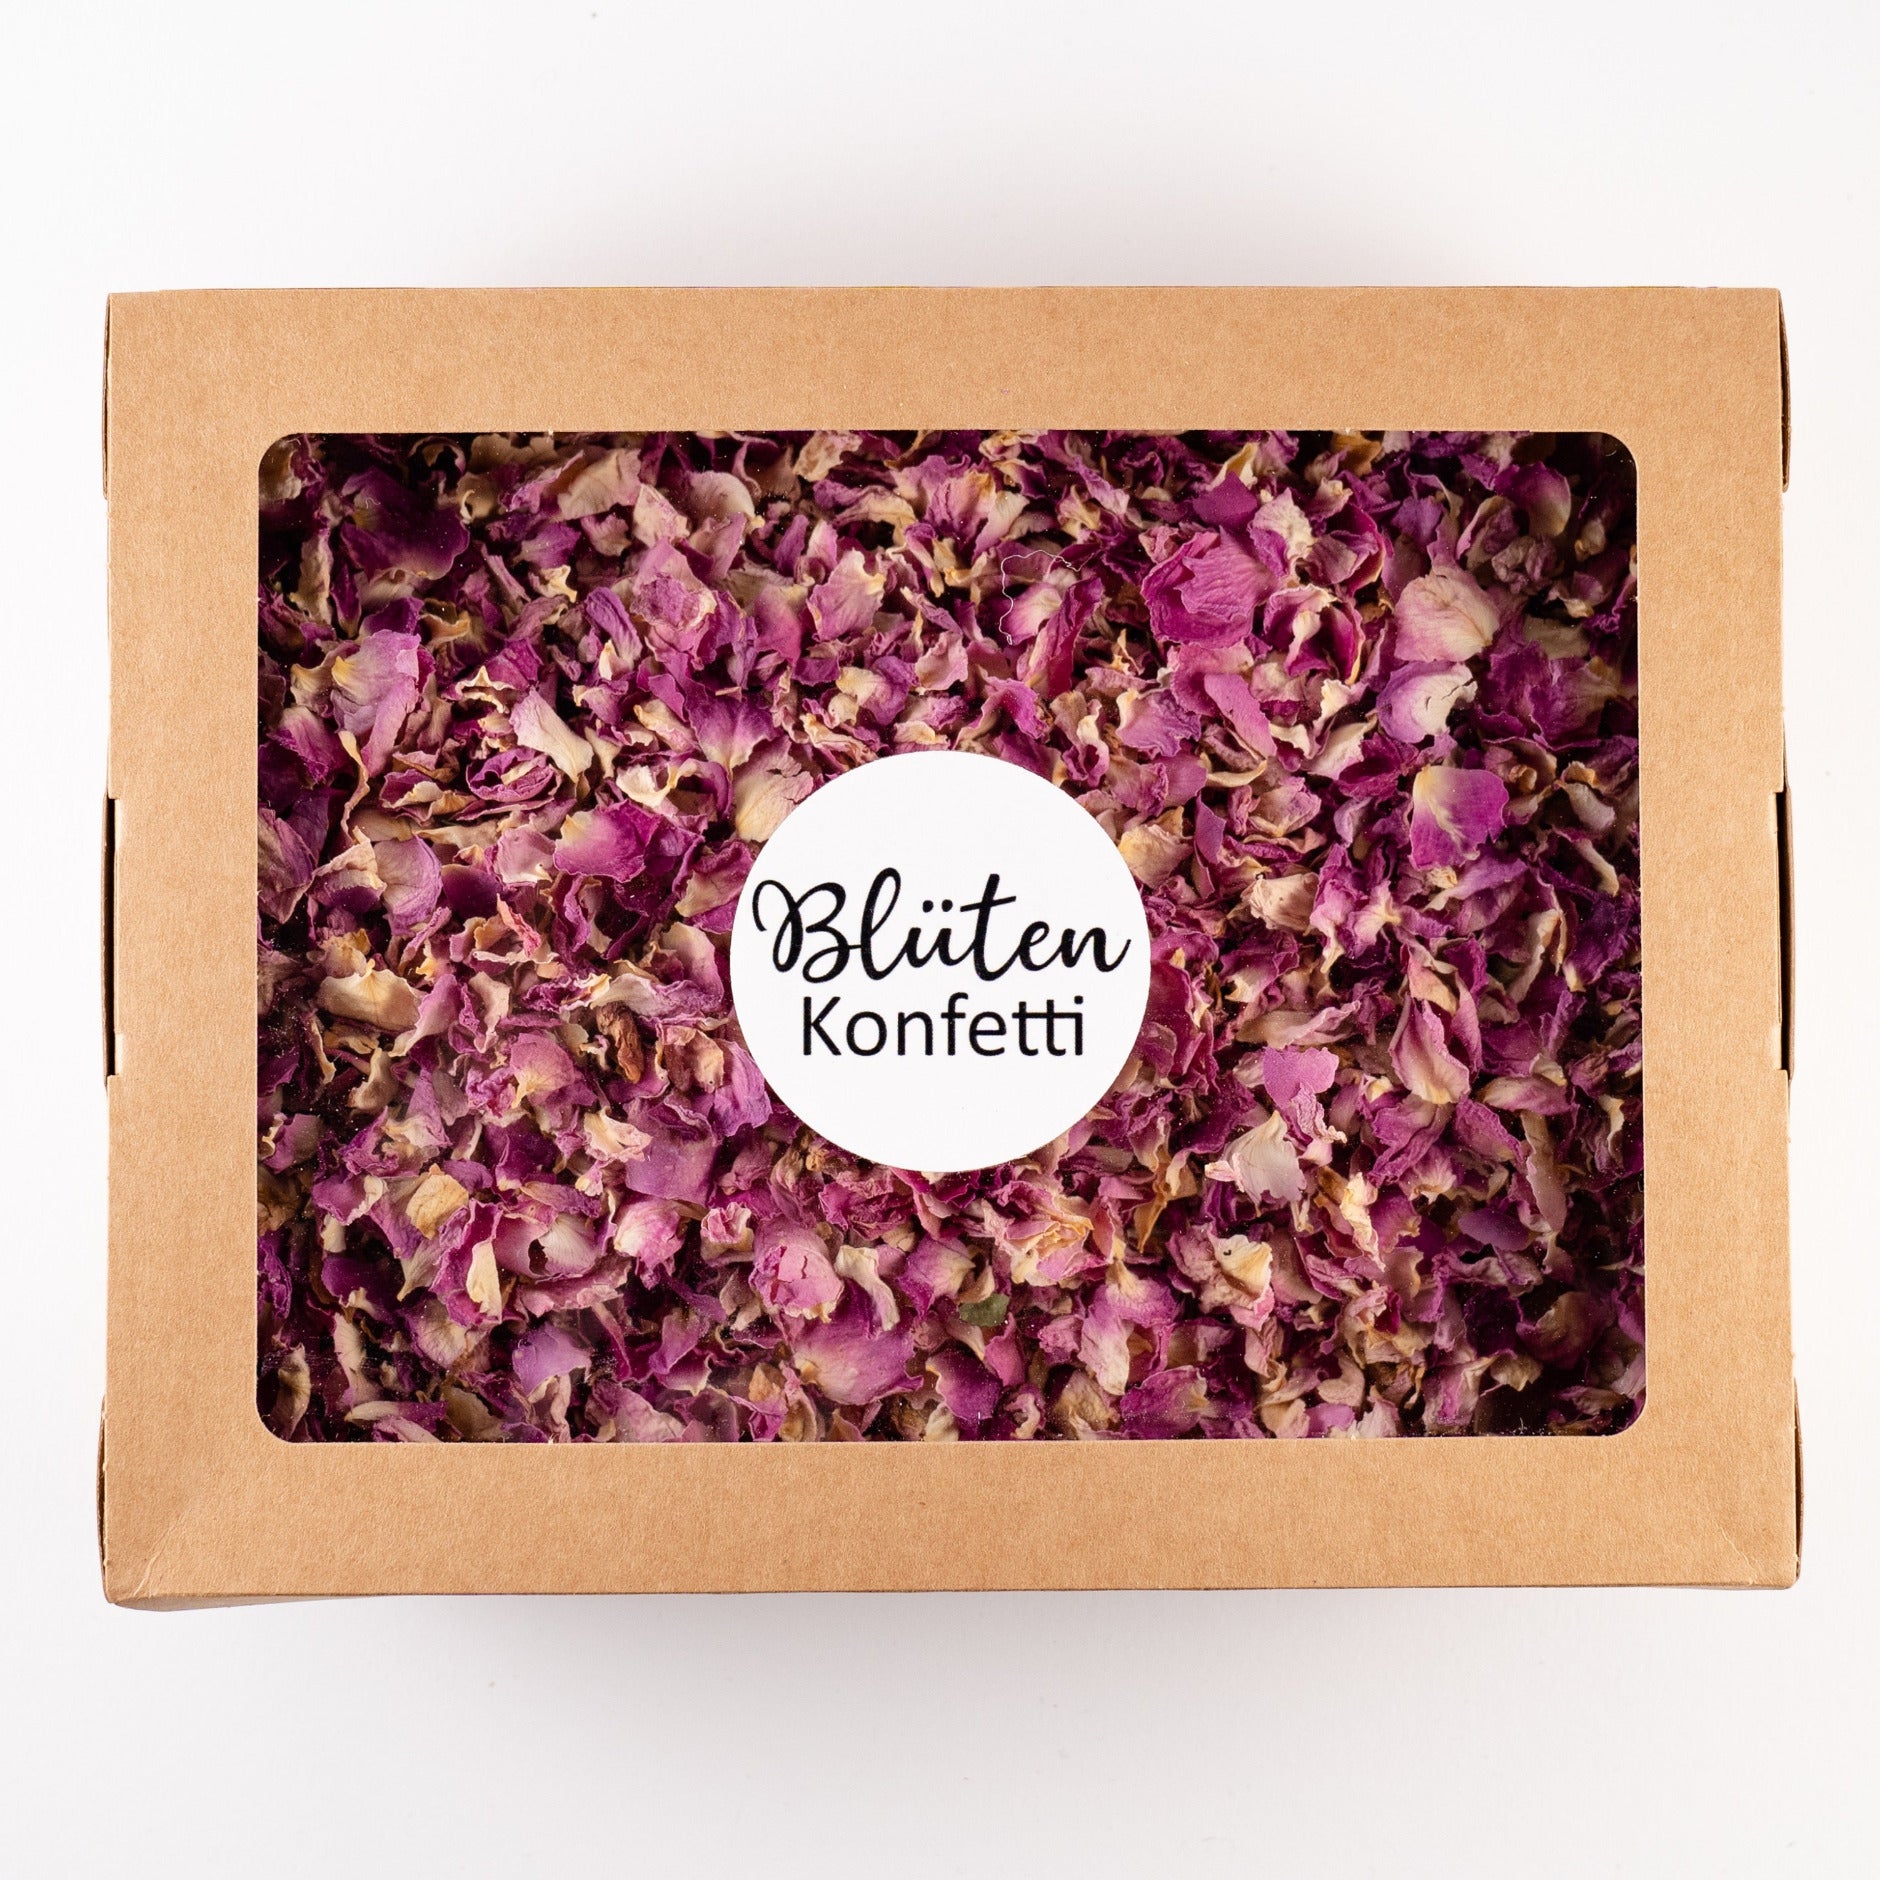 Blütenkonfetti Pink Romance in der Box